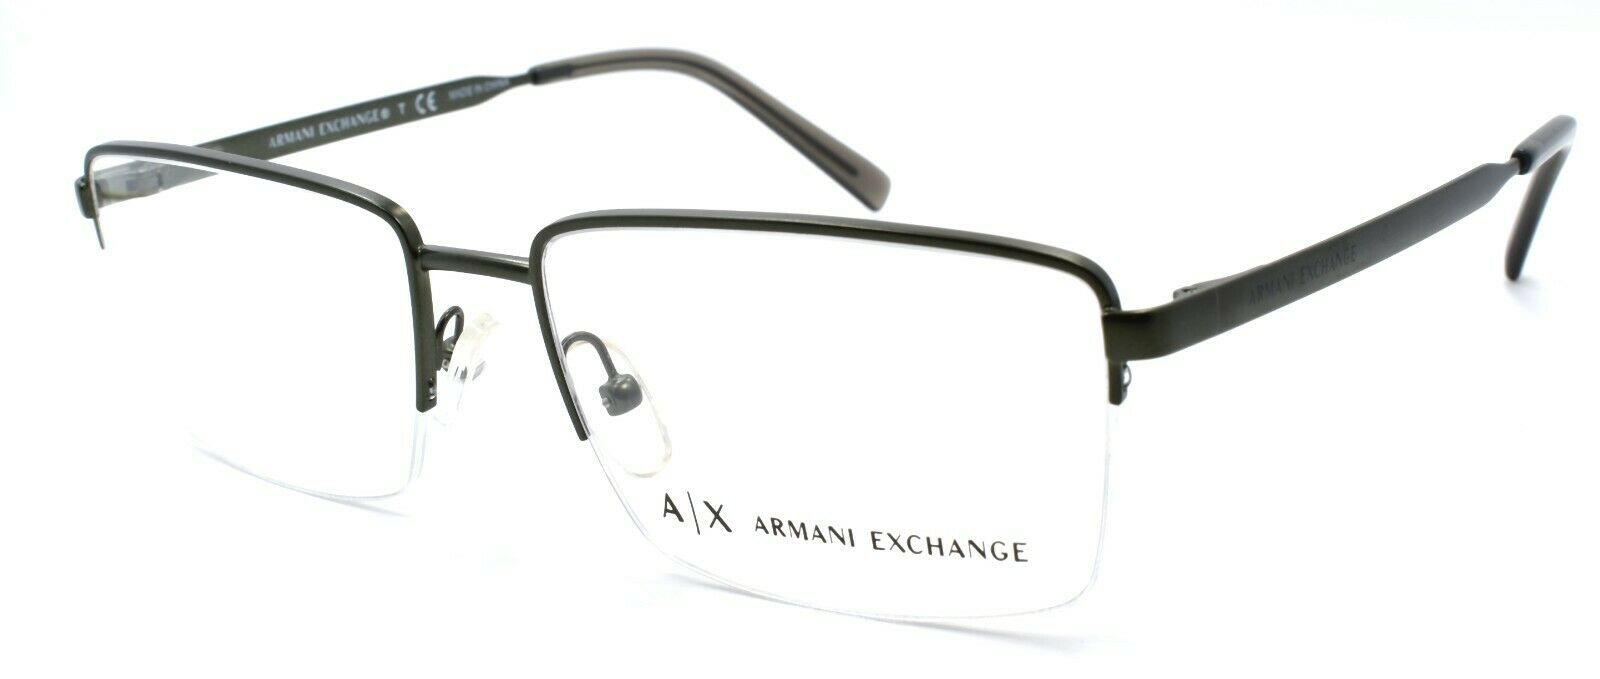 1-Armani Exchange AX1027 6101 Men's Glasses Frames Half-rim 54-17-140 Matte Olive-8053672798241-IKSpecs